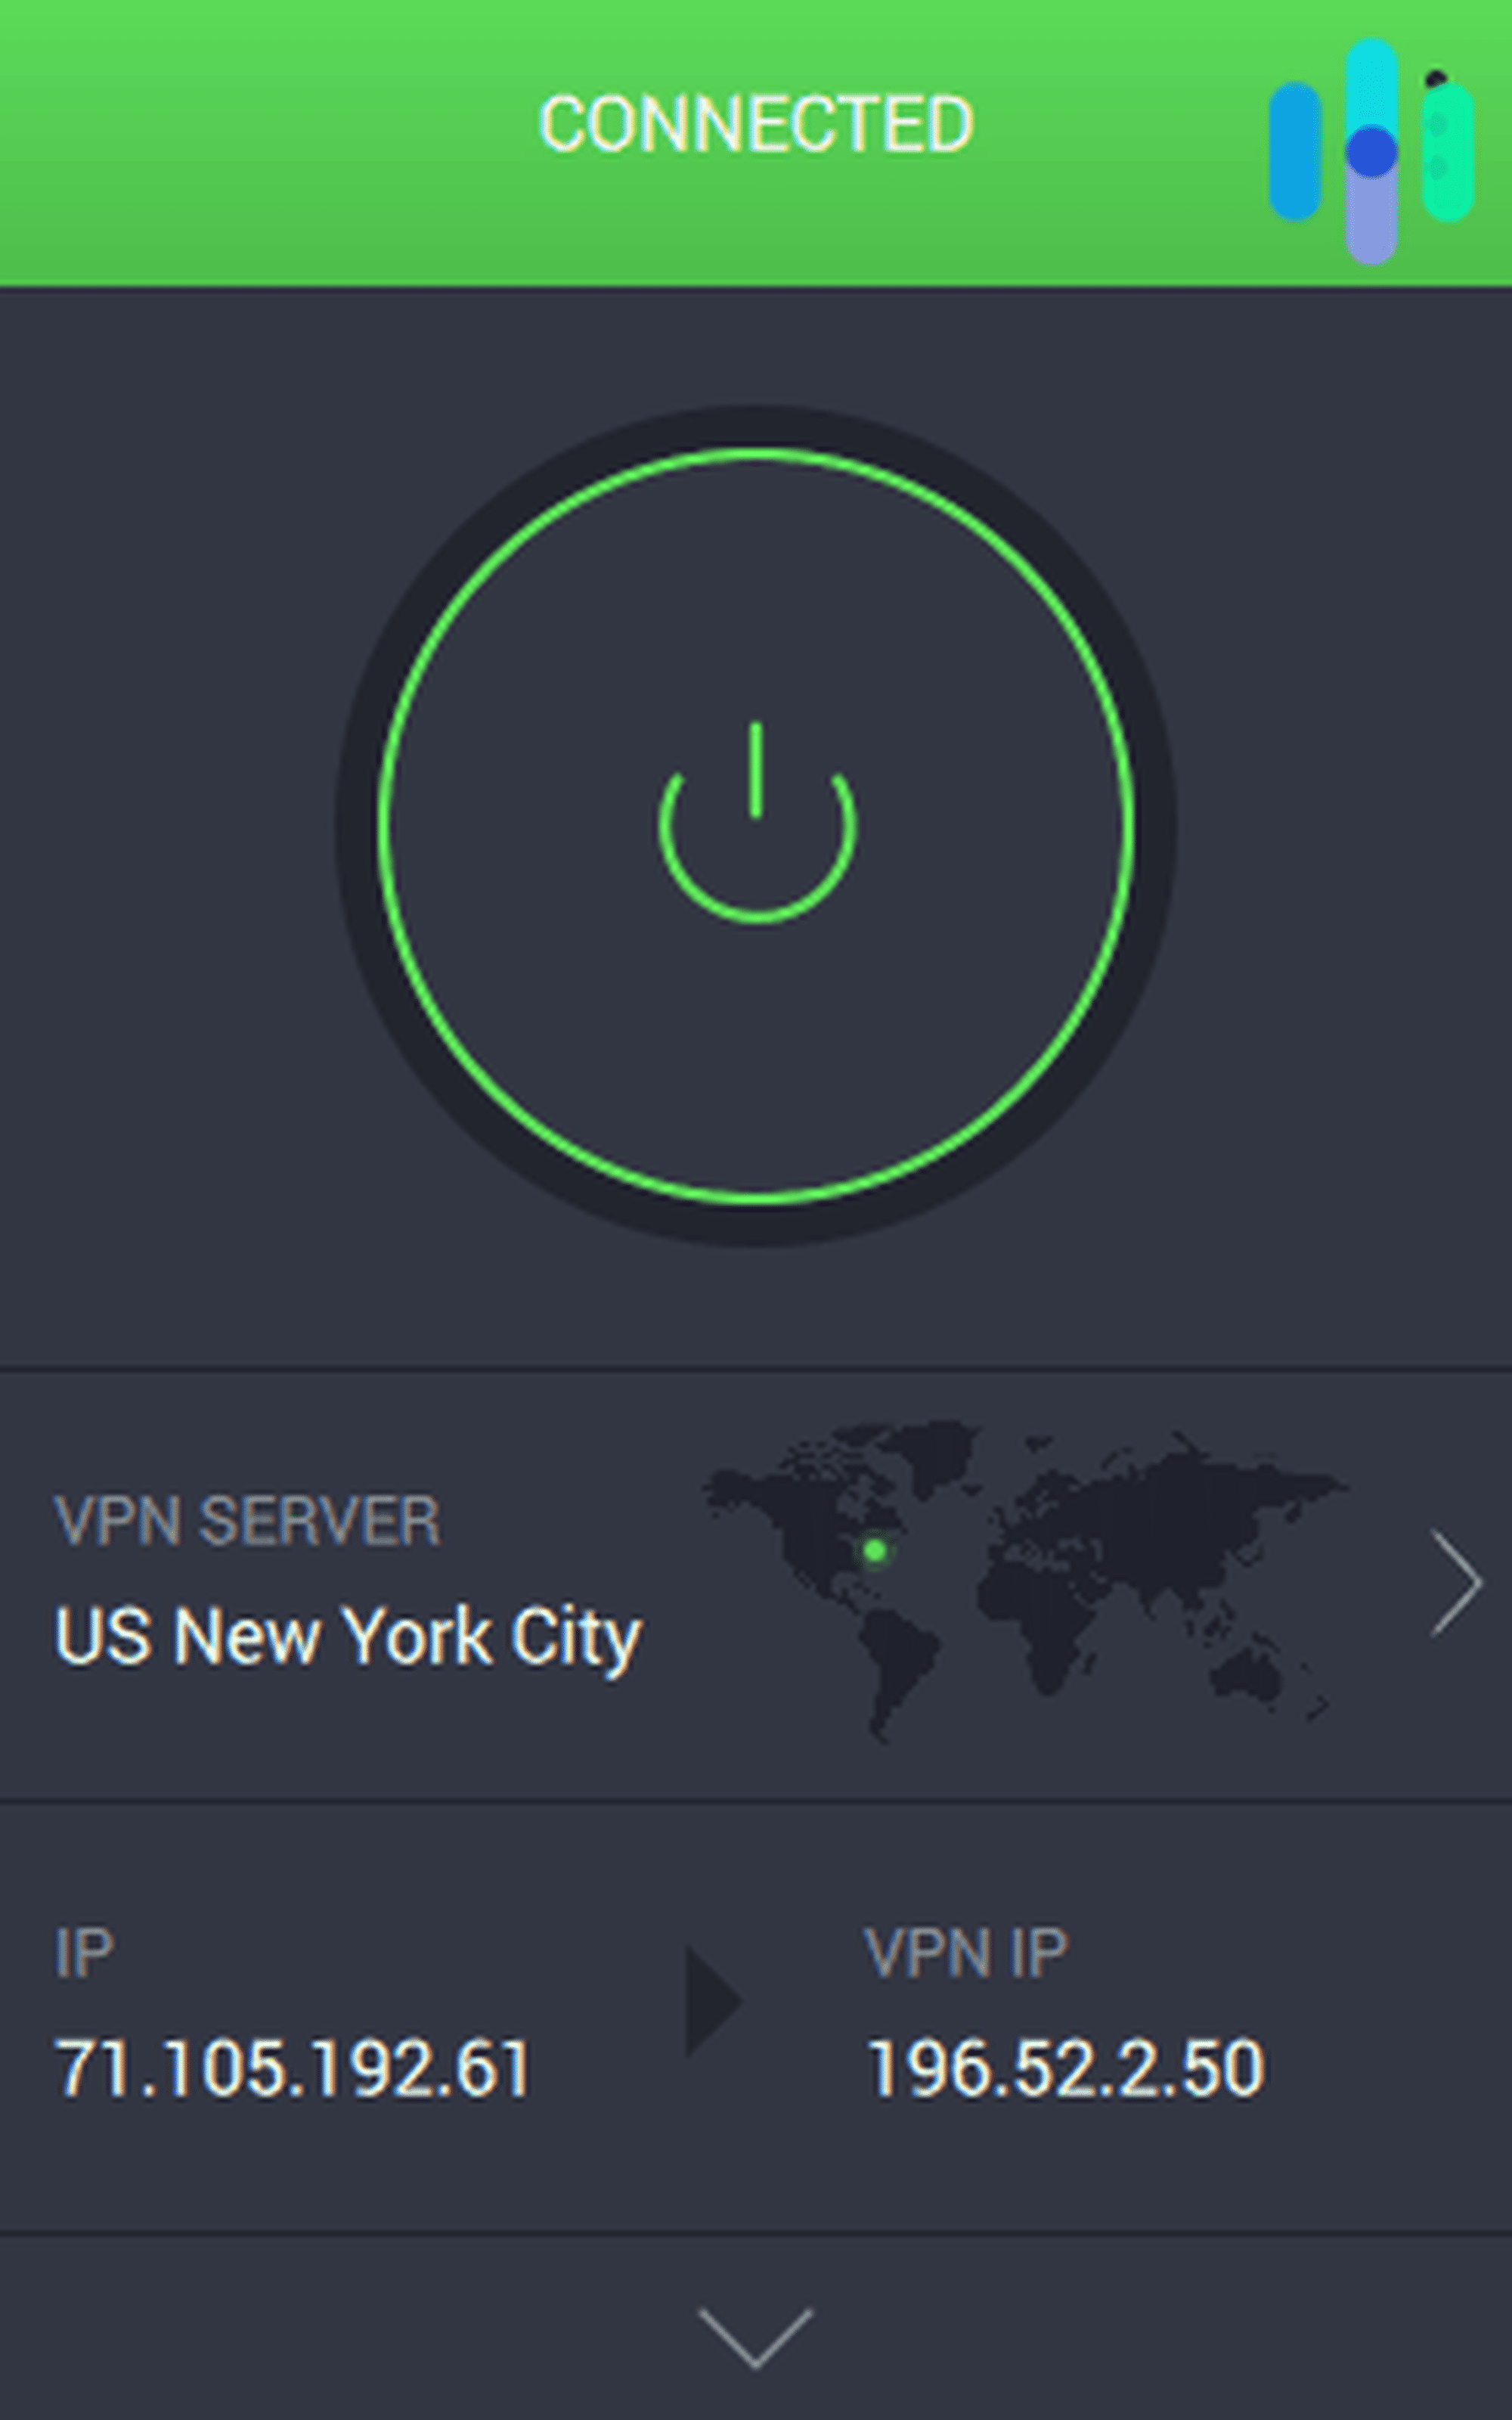 VPN Point  New York NY